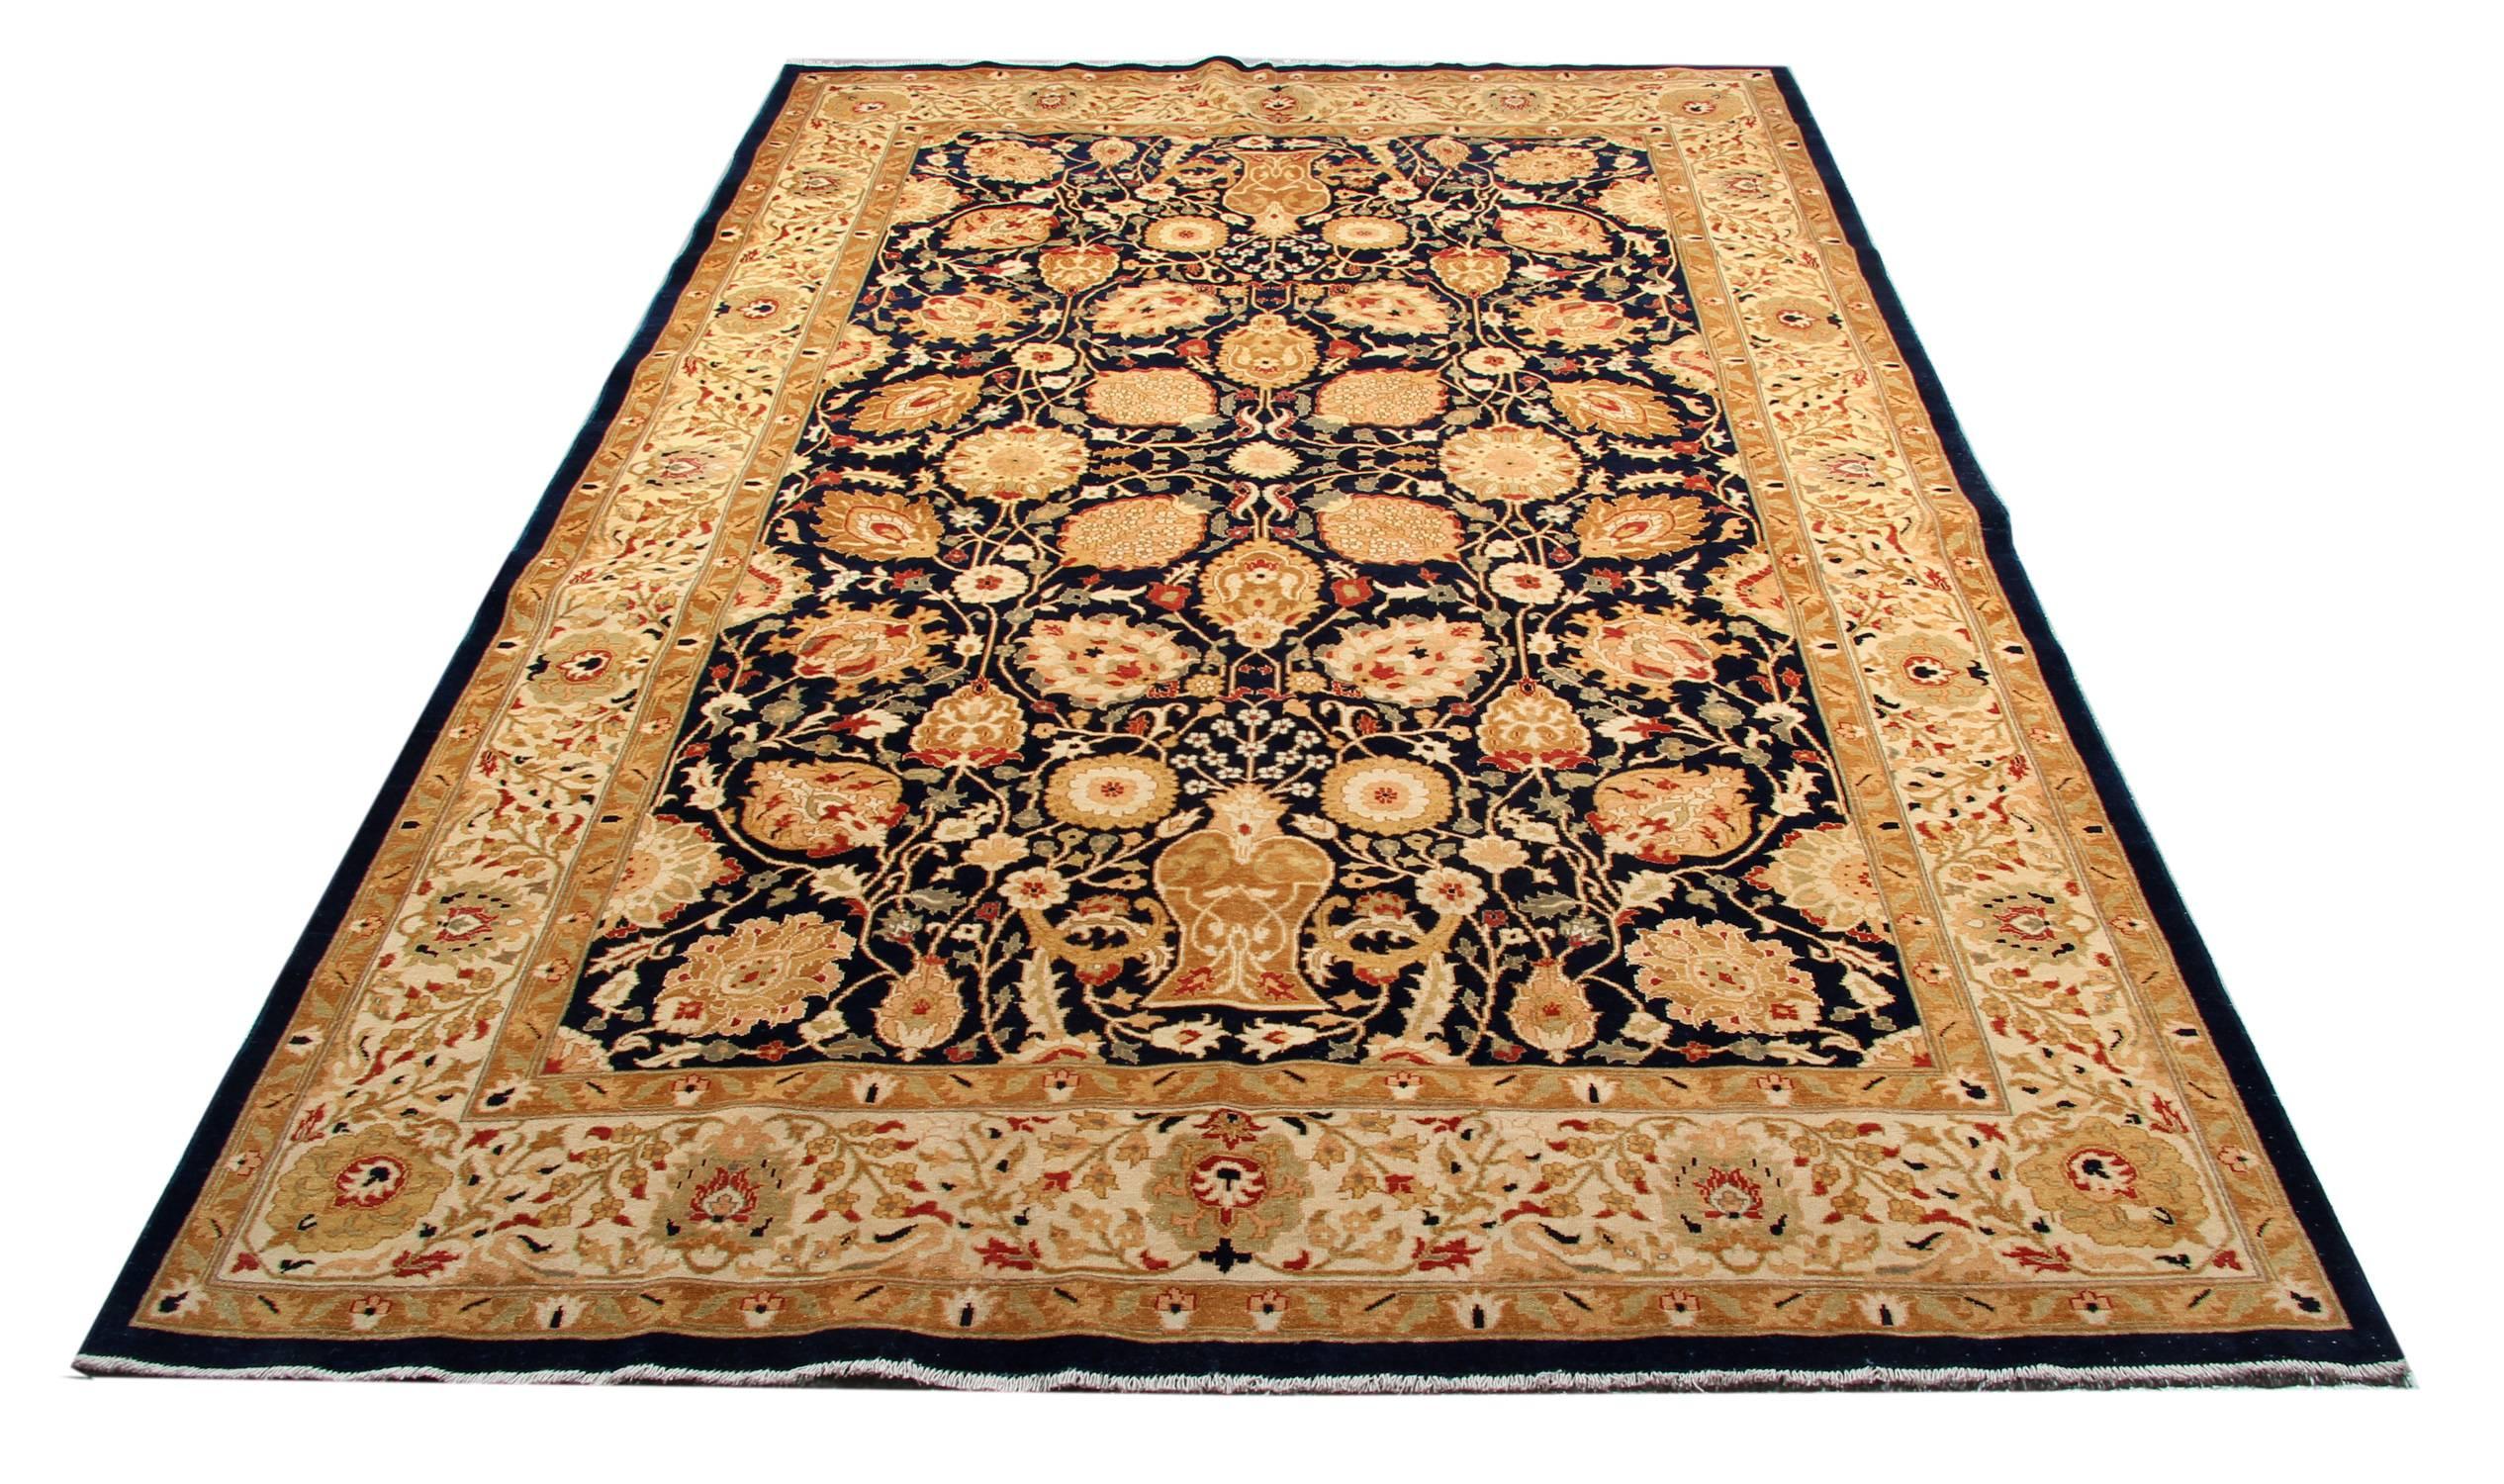 Ce tapis oriental doré fait à la main est un tapis tissé Sultanabad de style Ziegler, fabriqué sur nos métiers par nos maîtres tisserands en Afghanistan. Ce tapis à motifs floraux fait partie de nos tapis de luxe fabriqués sur nos propres métiers à